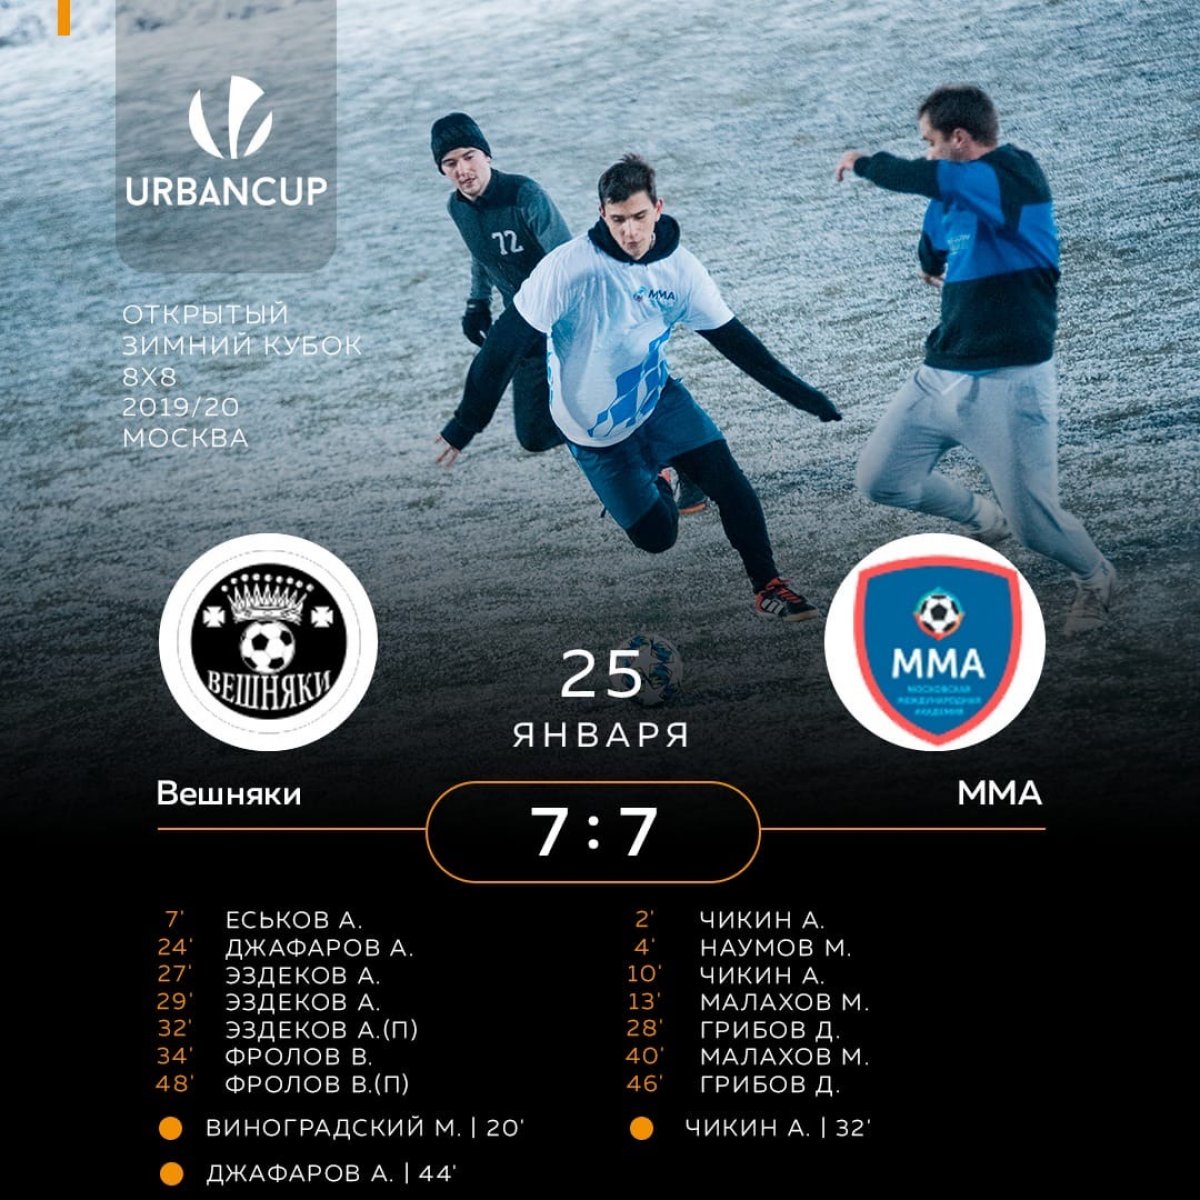 Наша футбольная команда, которая выступает на открытом зимнем кубке «URBAN CUP», выходит на финишную «прямую»! ☄️